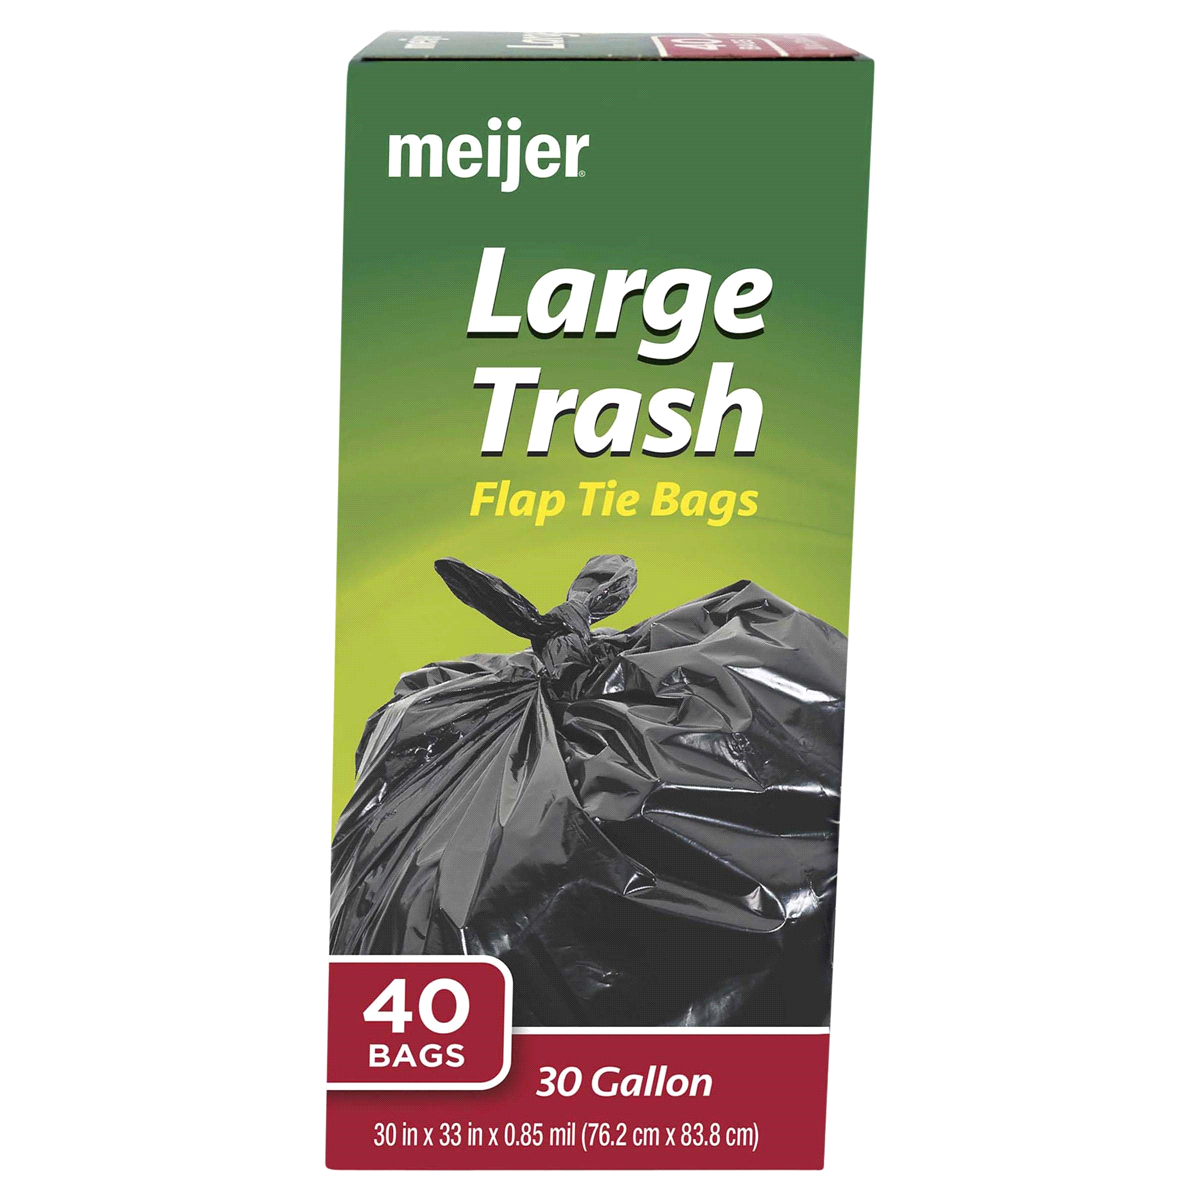 slide 1 of 1, Meijer Large Trash Flap Tie Bags, 40 ct; 30 gal